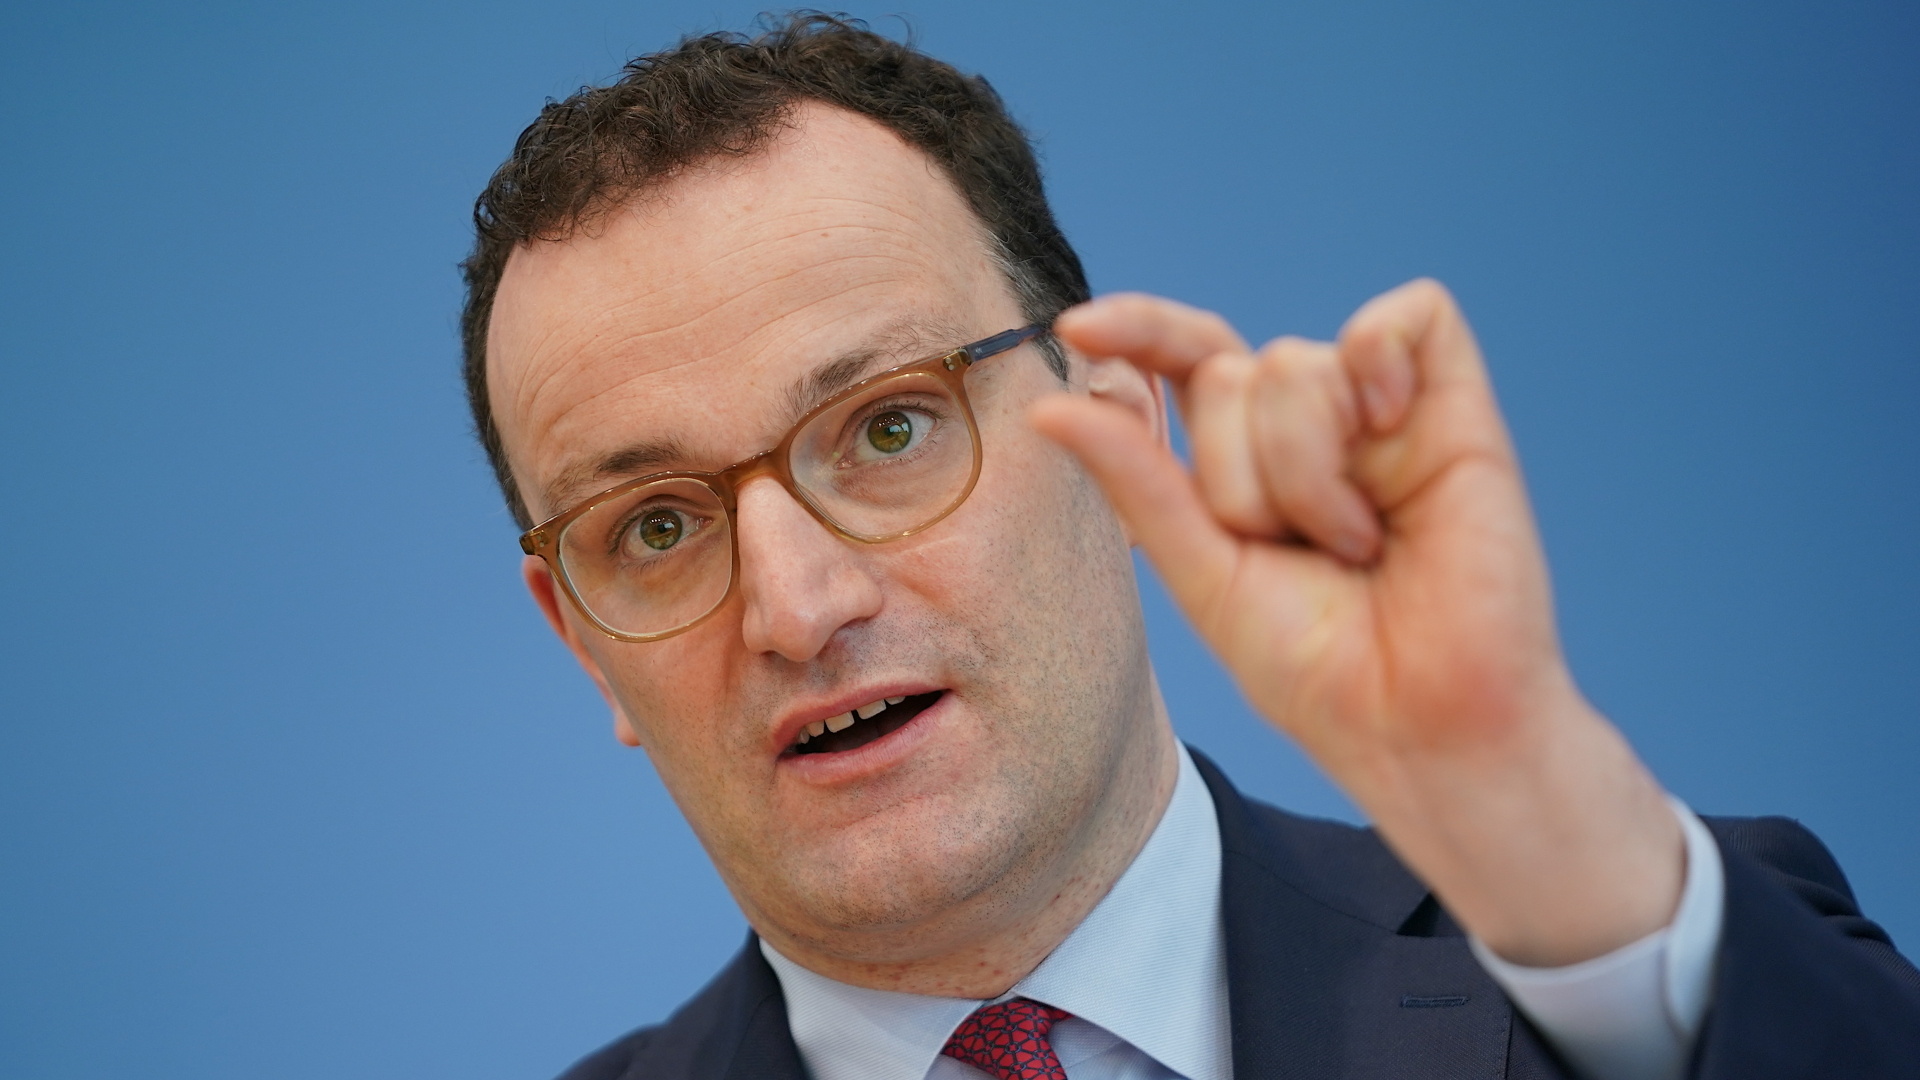 Gesundheitsminister Spahn zeigt "sehr wenig"-Geste | dpa